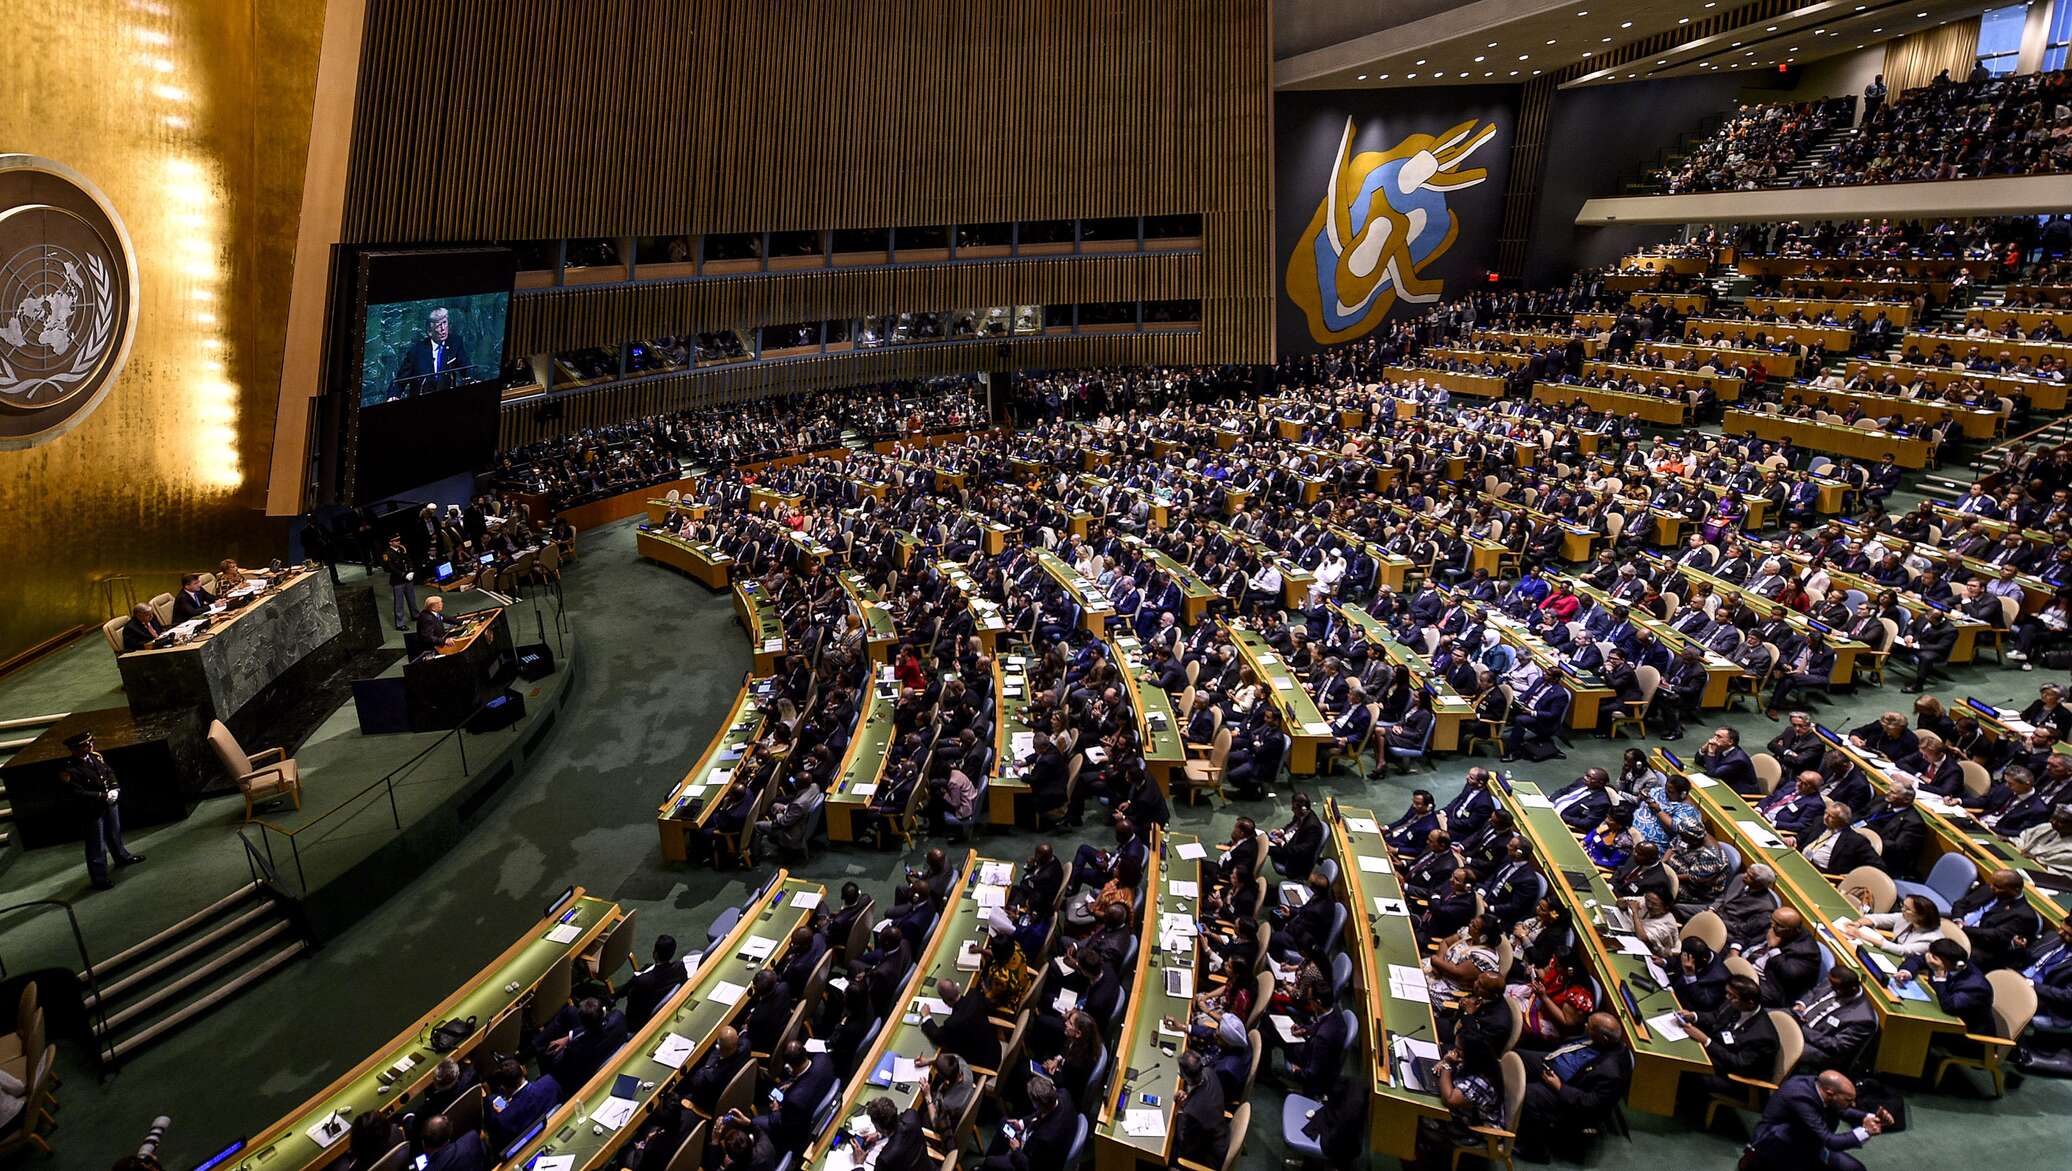 Ассамблея оон резолюции. Зал Генеральной Ассамблеи ООН. Зал заседаний Генассамблеи ООН. Генассамблея ООН В Нью Йорке. Зал заседания Генеральной Ассамблеи ООН.